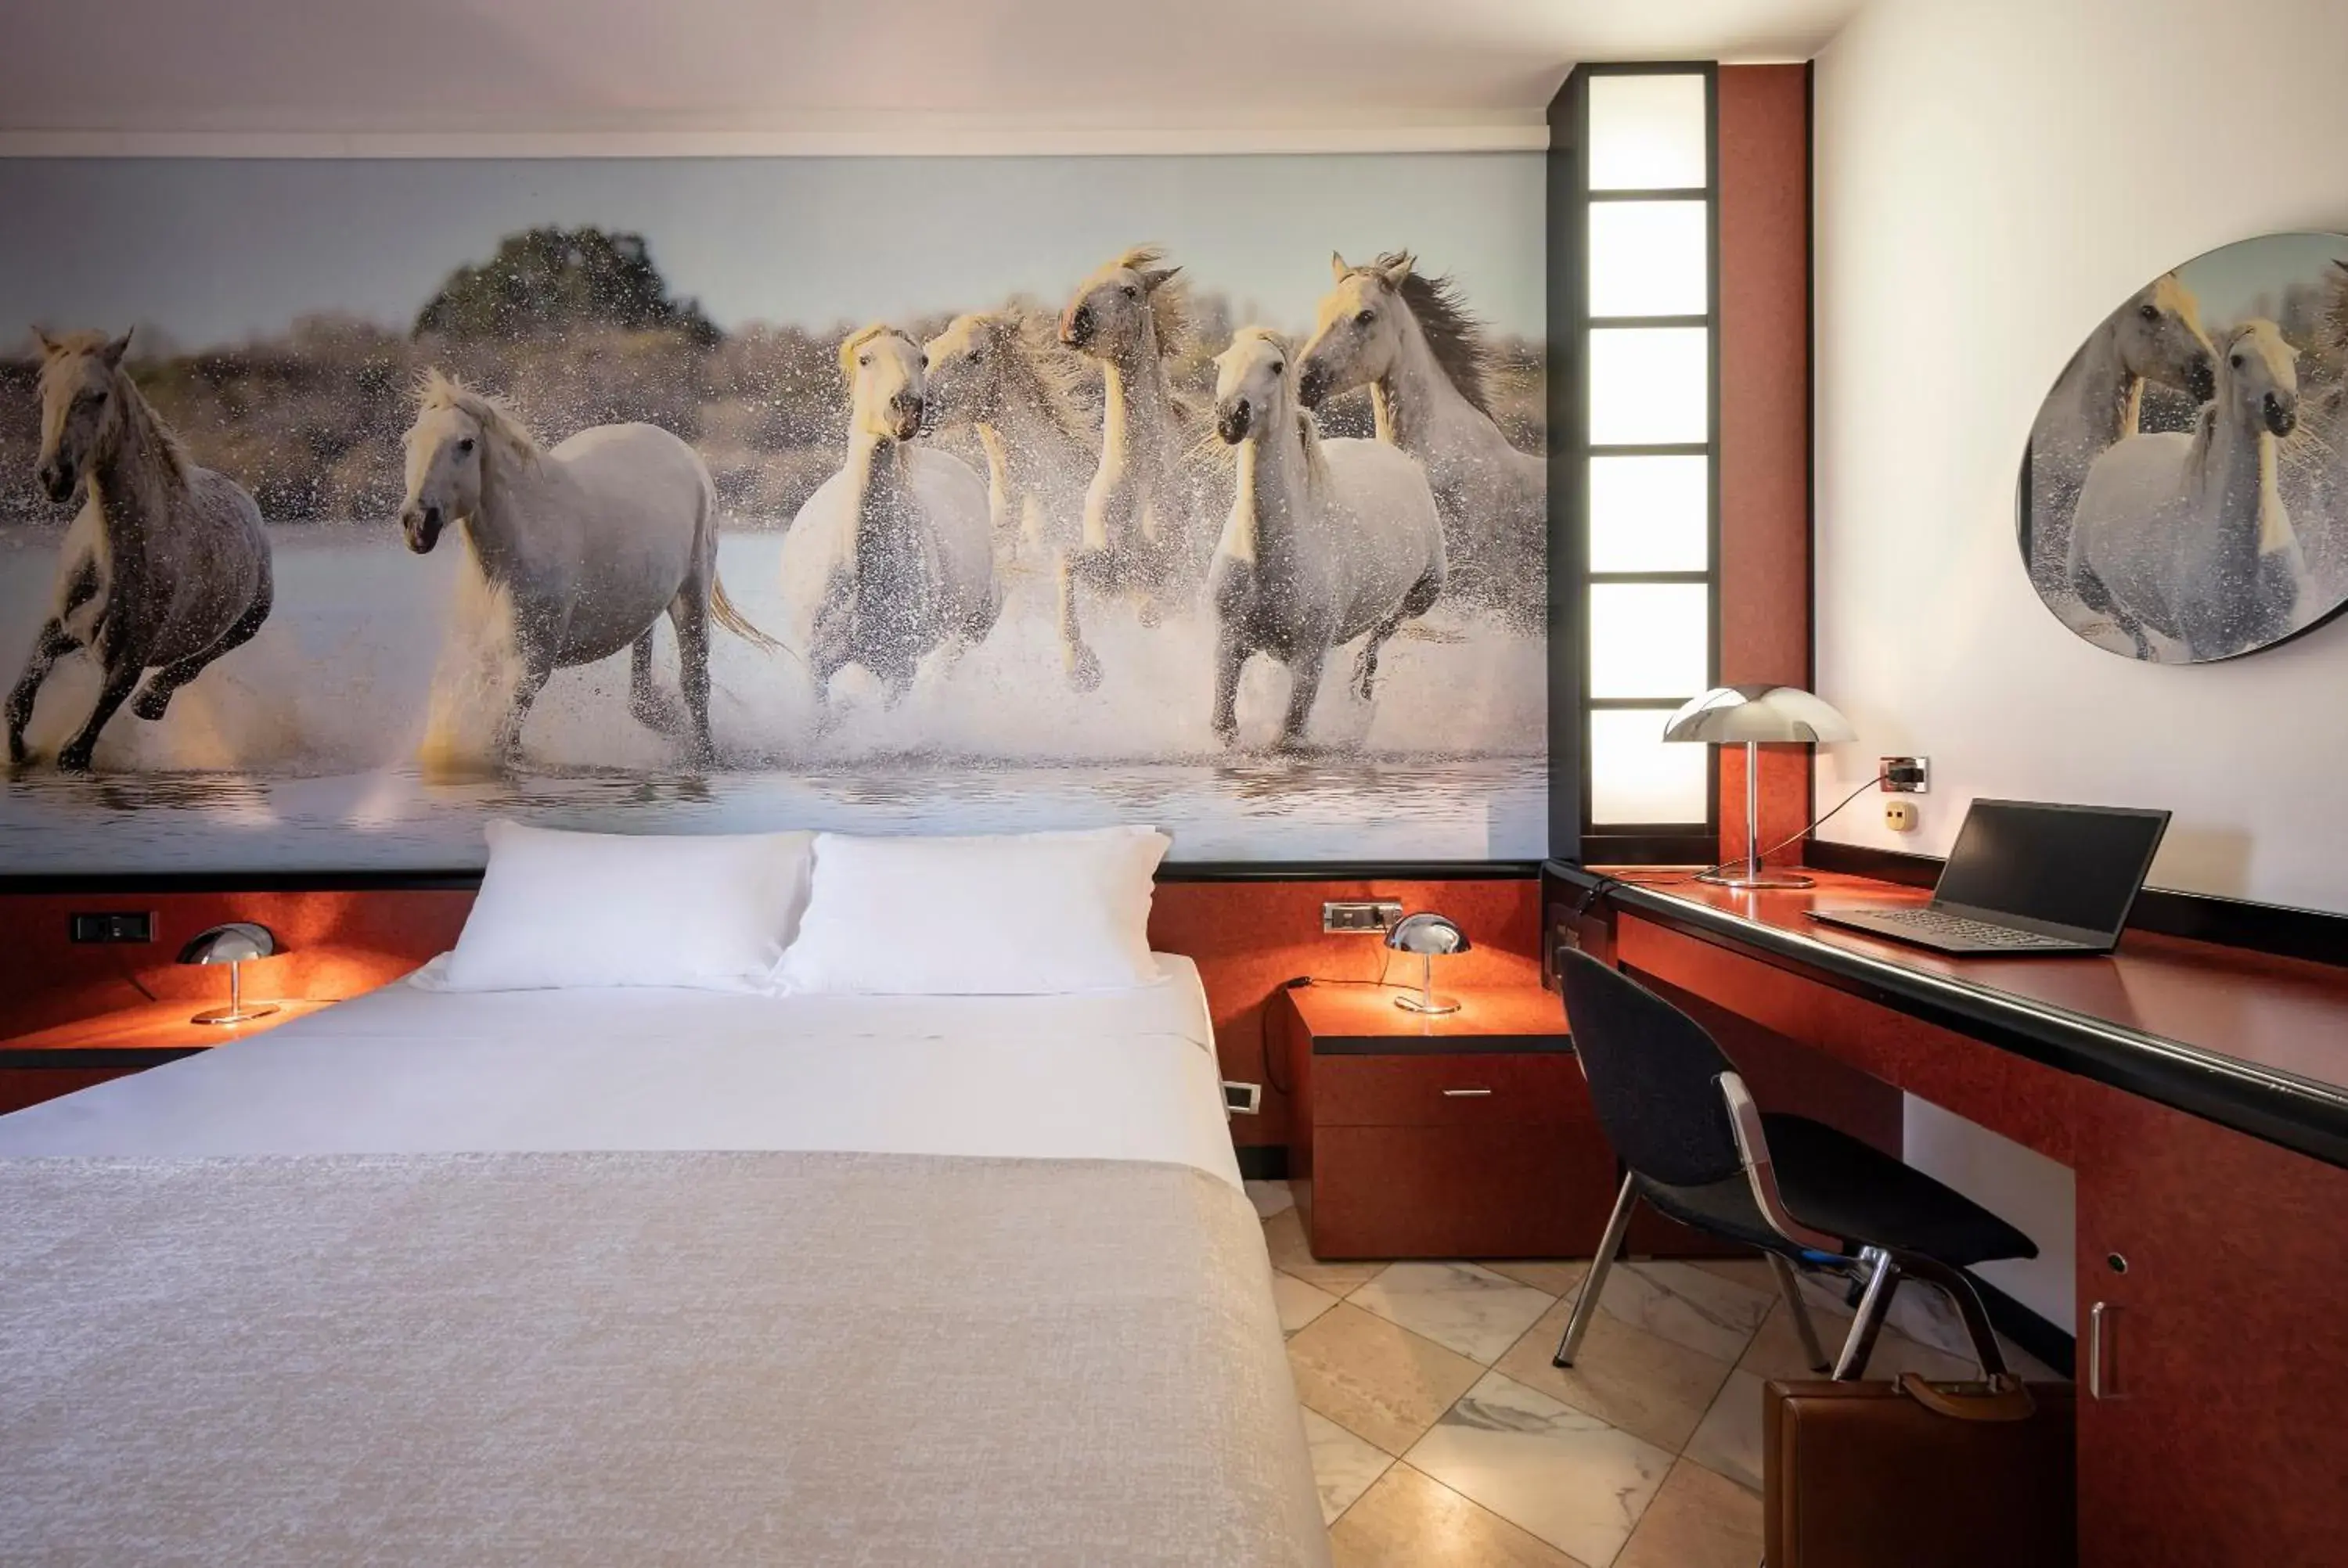 Bed in Hotel Granduca